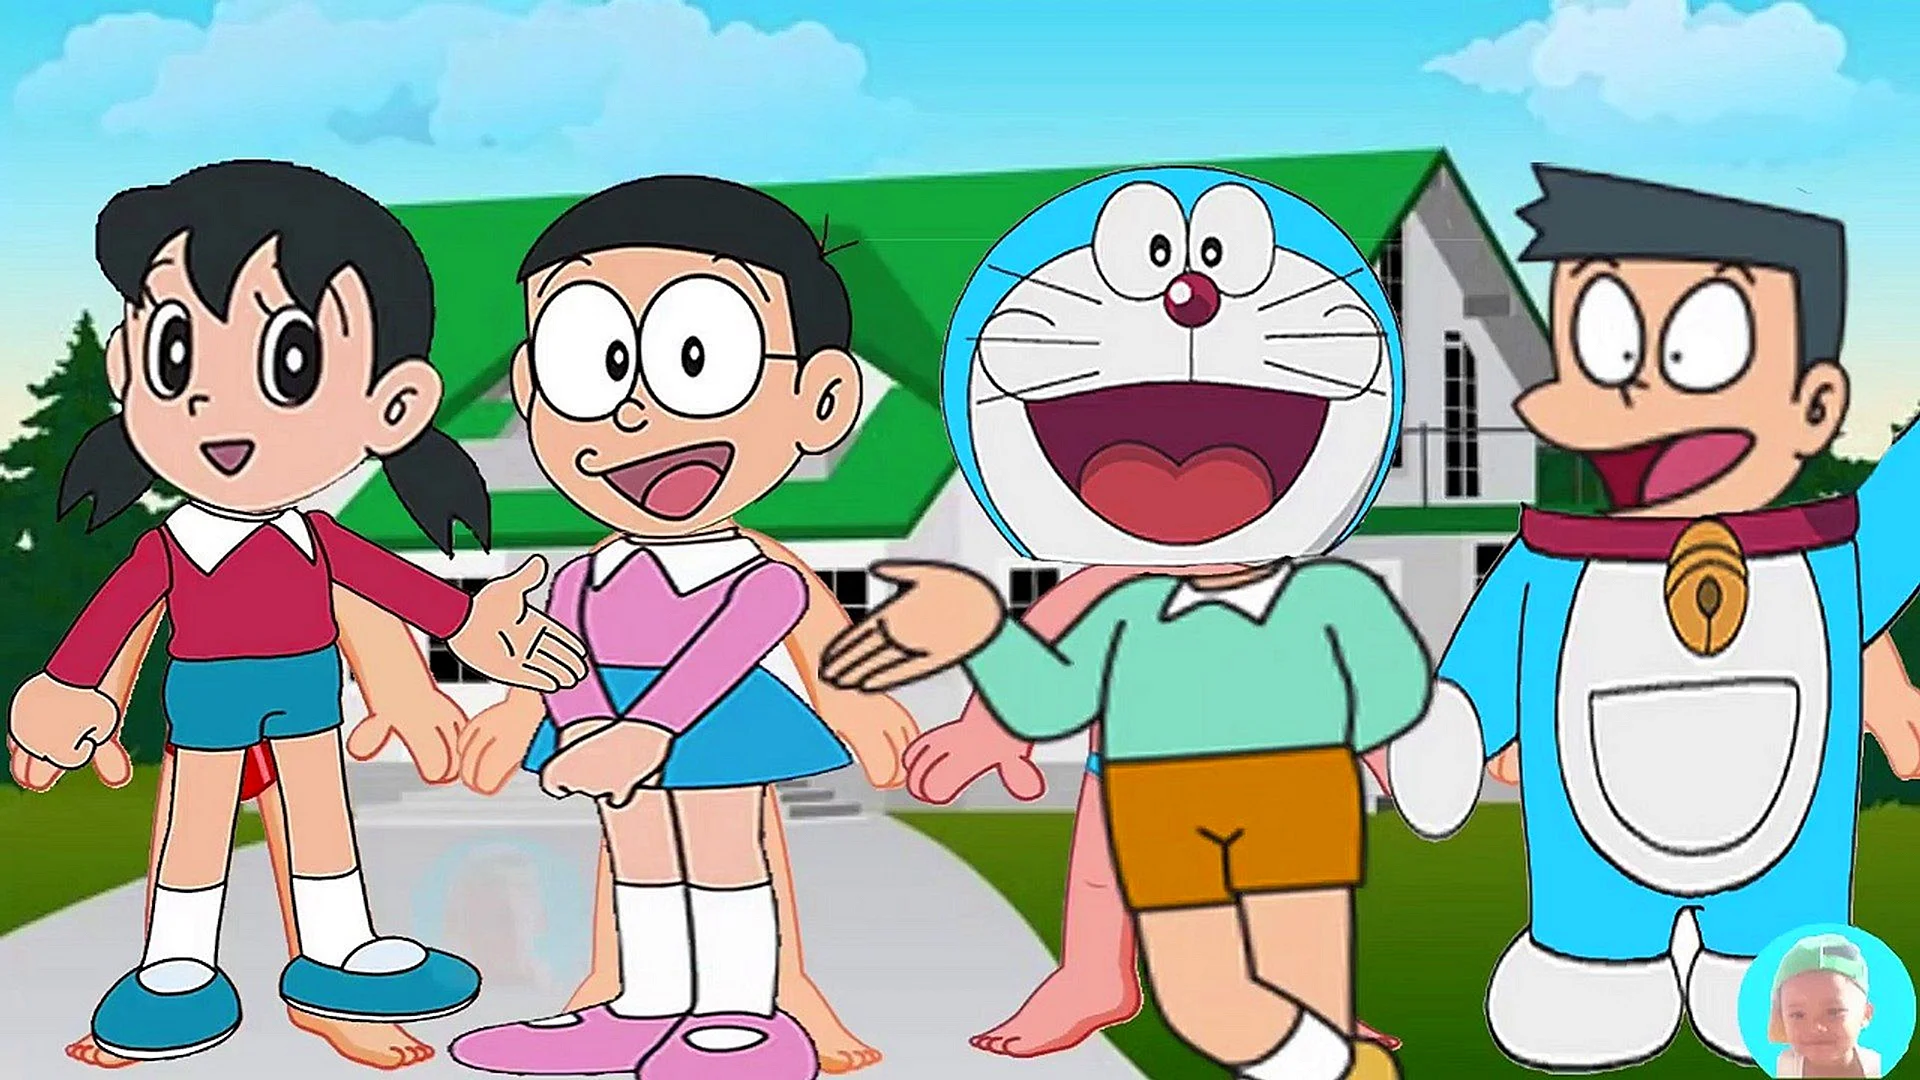 Doraemon Shizuka Wallpaper